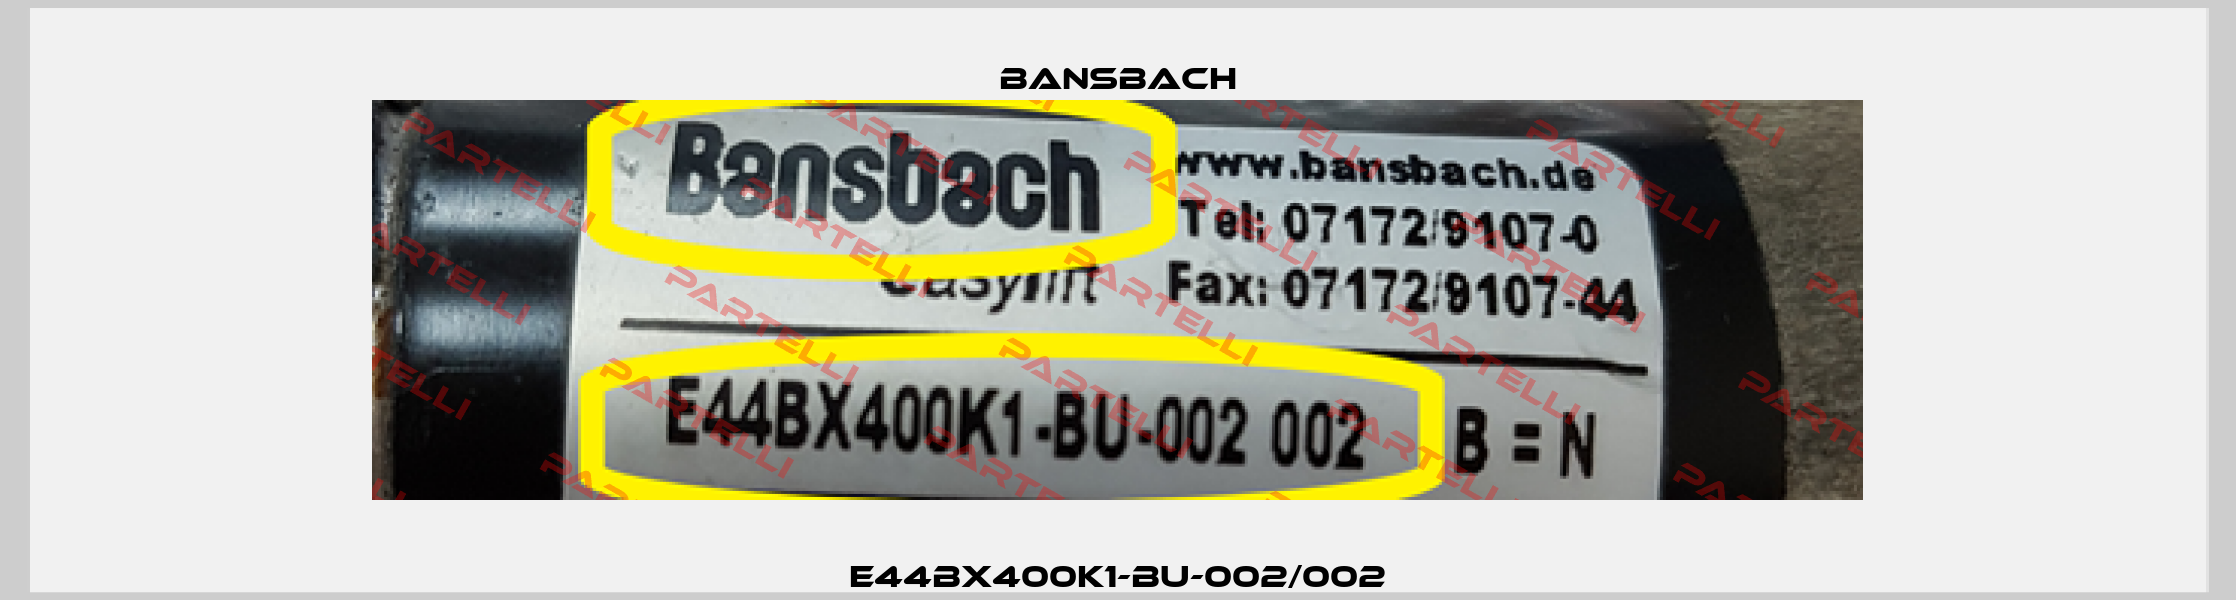 E44BX400K1-BU-002/002 Bansbach